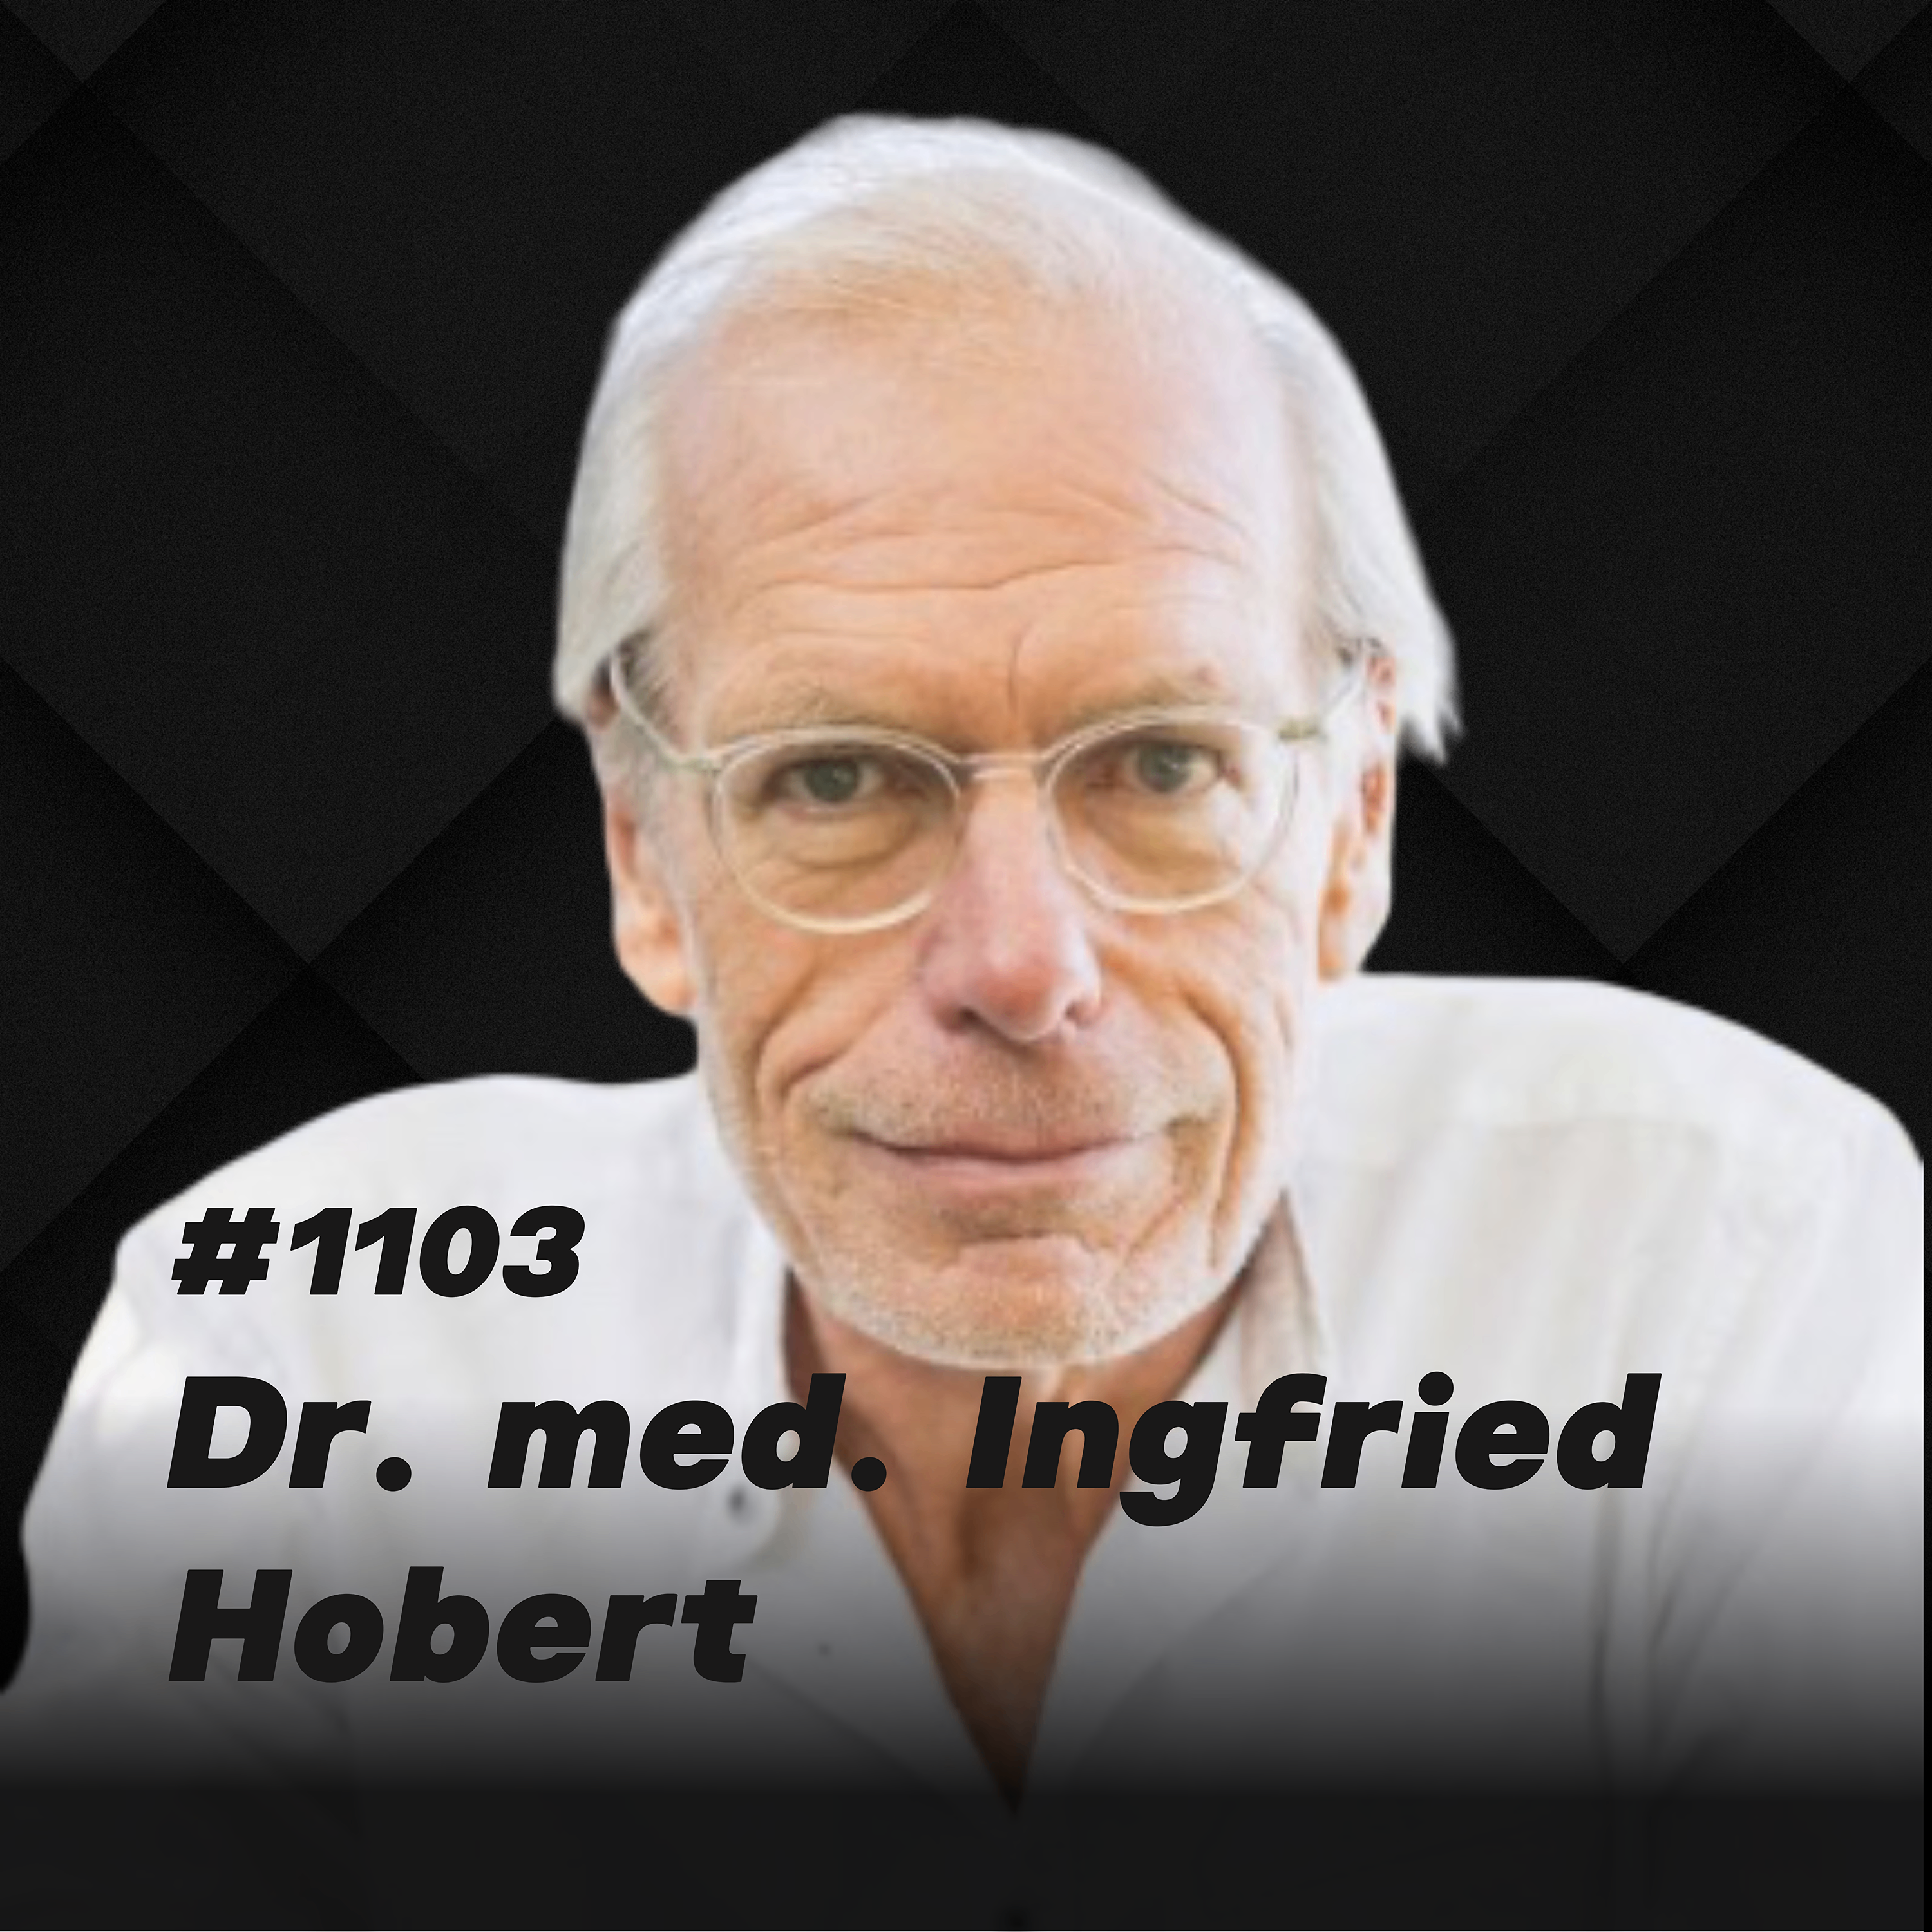 Auslöser von Krankheiten - Stress abbauen I Dr. med. Ingfried Hobert #1103